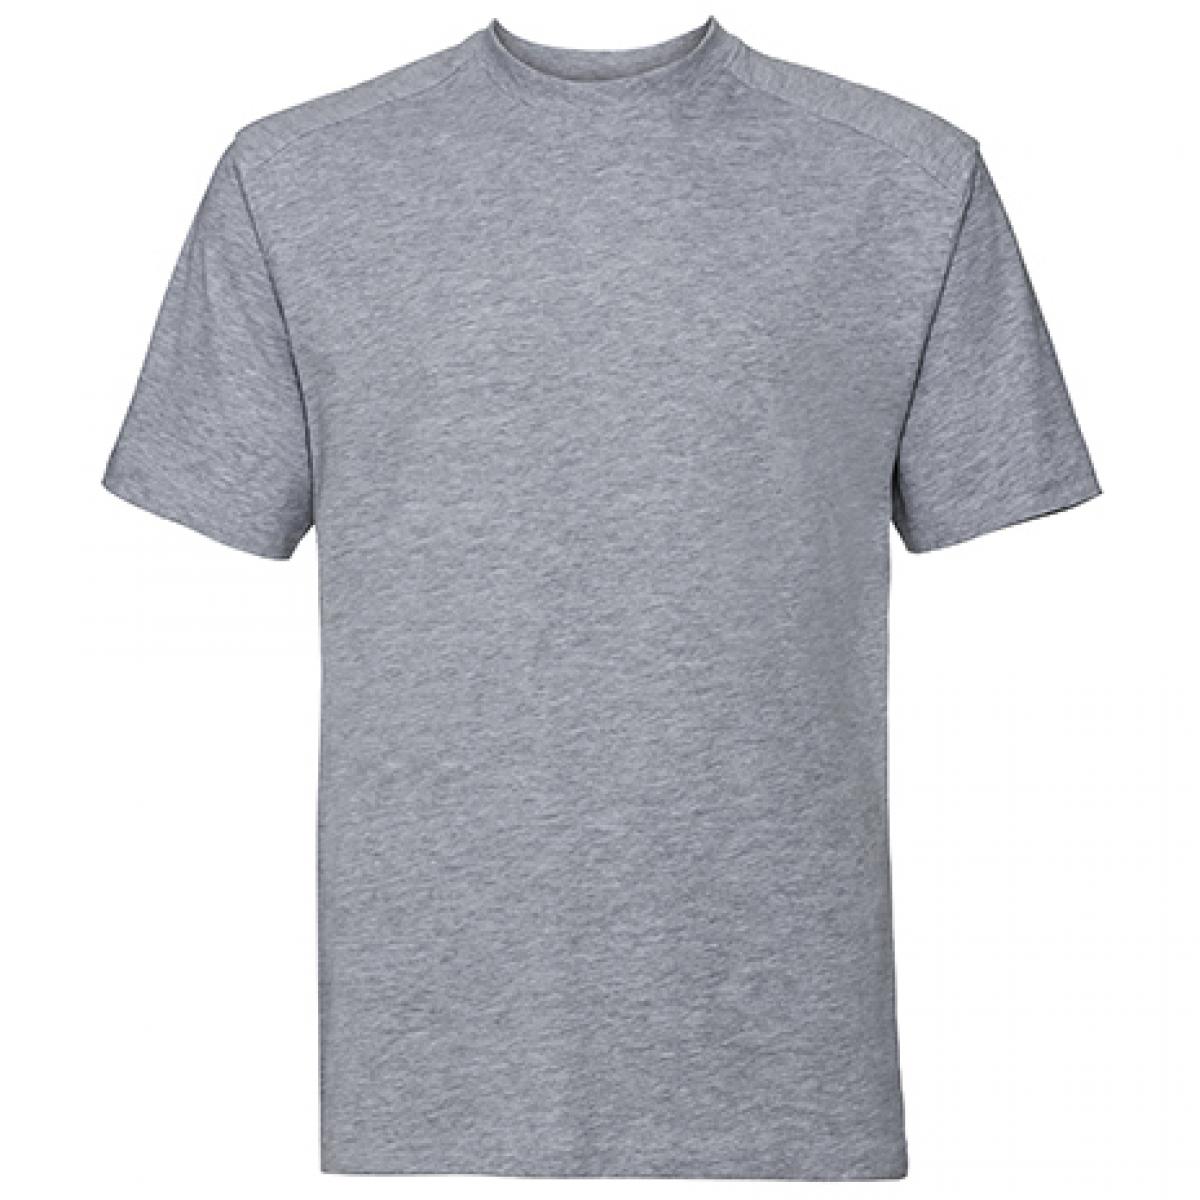 Hersteller: Russell Herstellernummer: R-010M-0 Artikelbezeichnung: Workwear Herren T-Shirt - Waschbar bis 60 °C -  bis 4XL Farbe: Light Oxford (Heather)